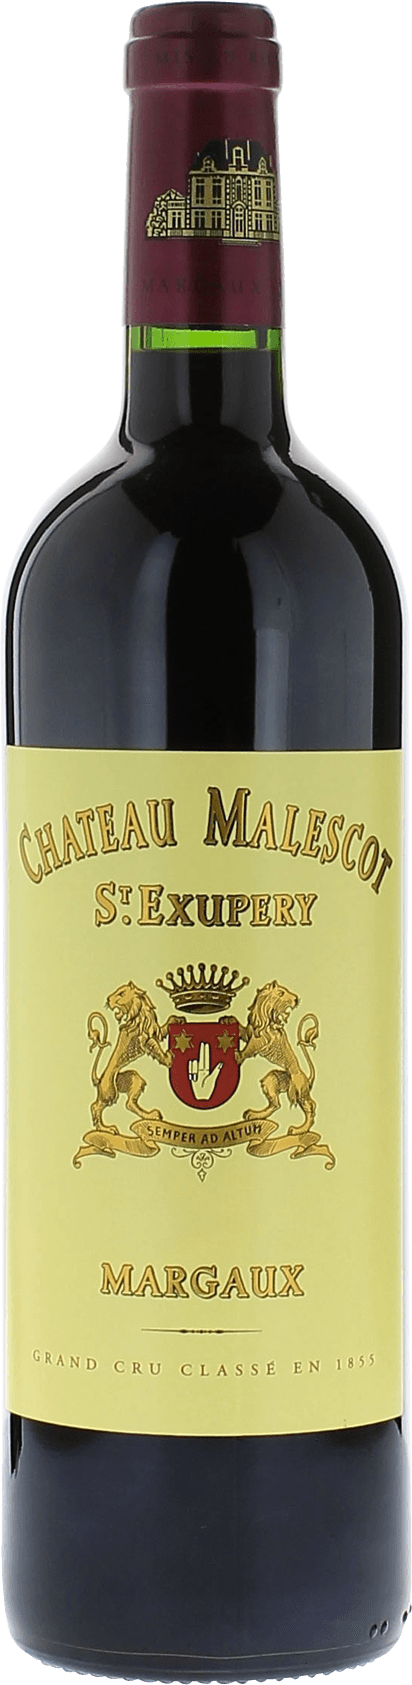 Malescot saint exupery 1988 3me Grand cru class Margaux, Bordeaux rouge